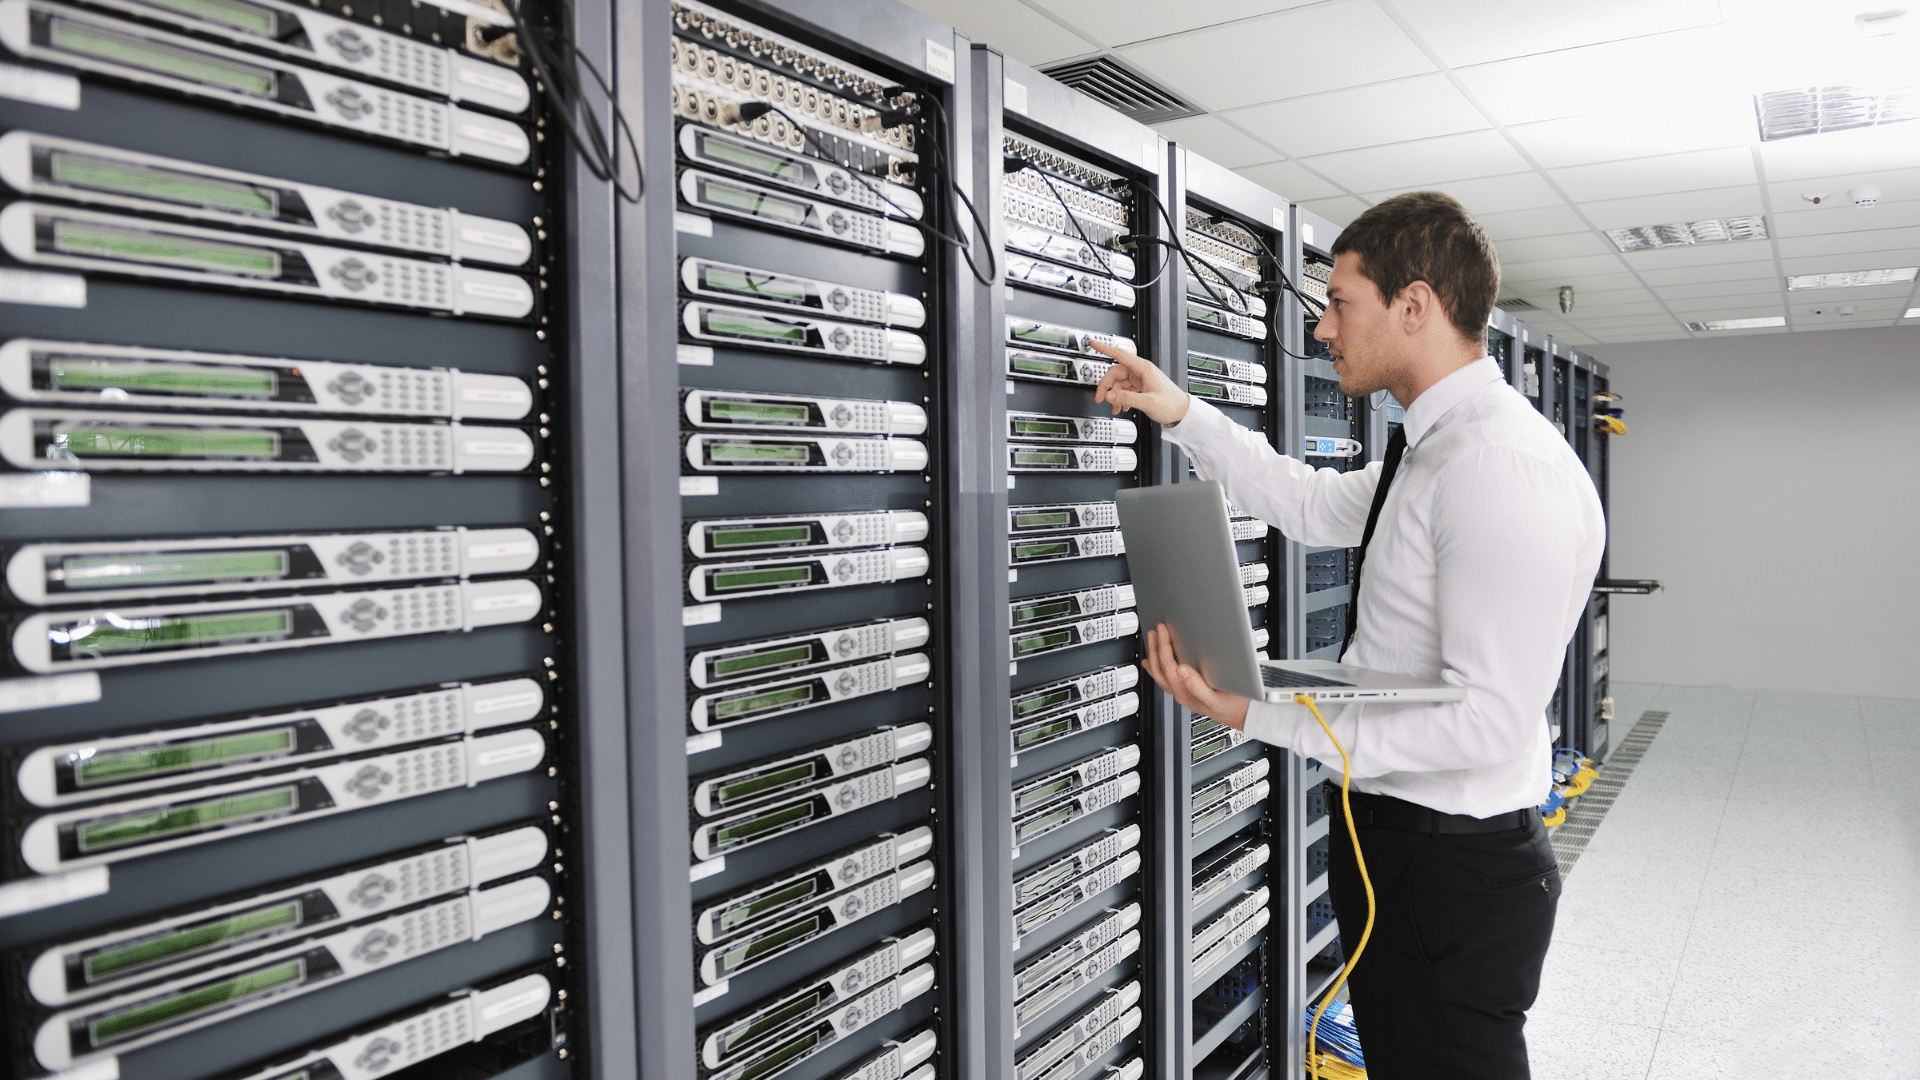 El control de accesos, clave para garantizar la seguridad en data centers